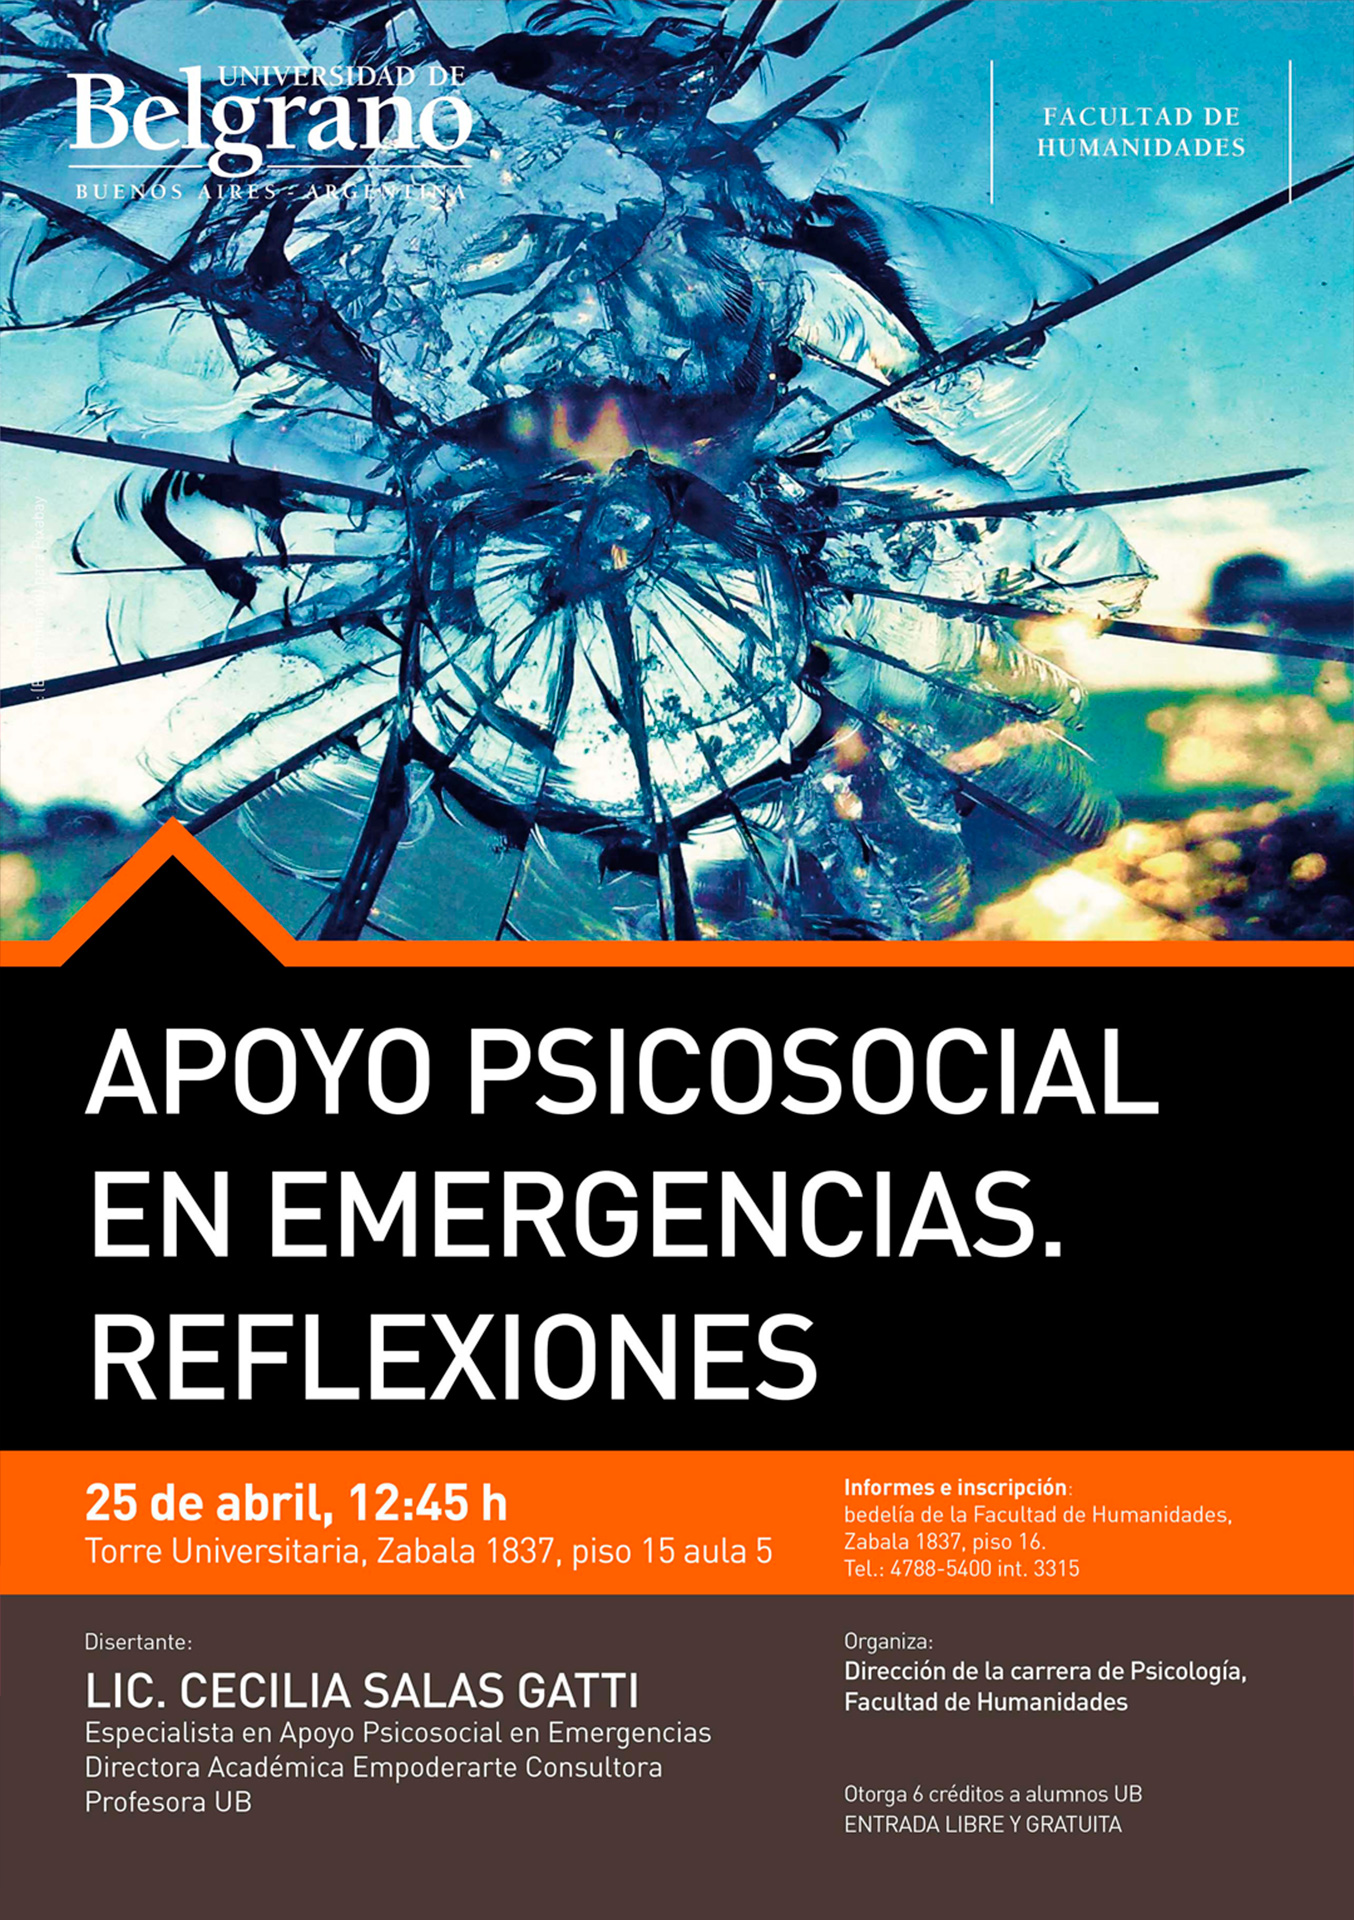 Universidad de Belgrano | Facultad de Humanidades | Apoyo Psicosocial en Emergencias